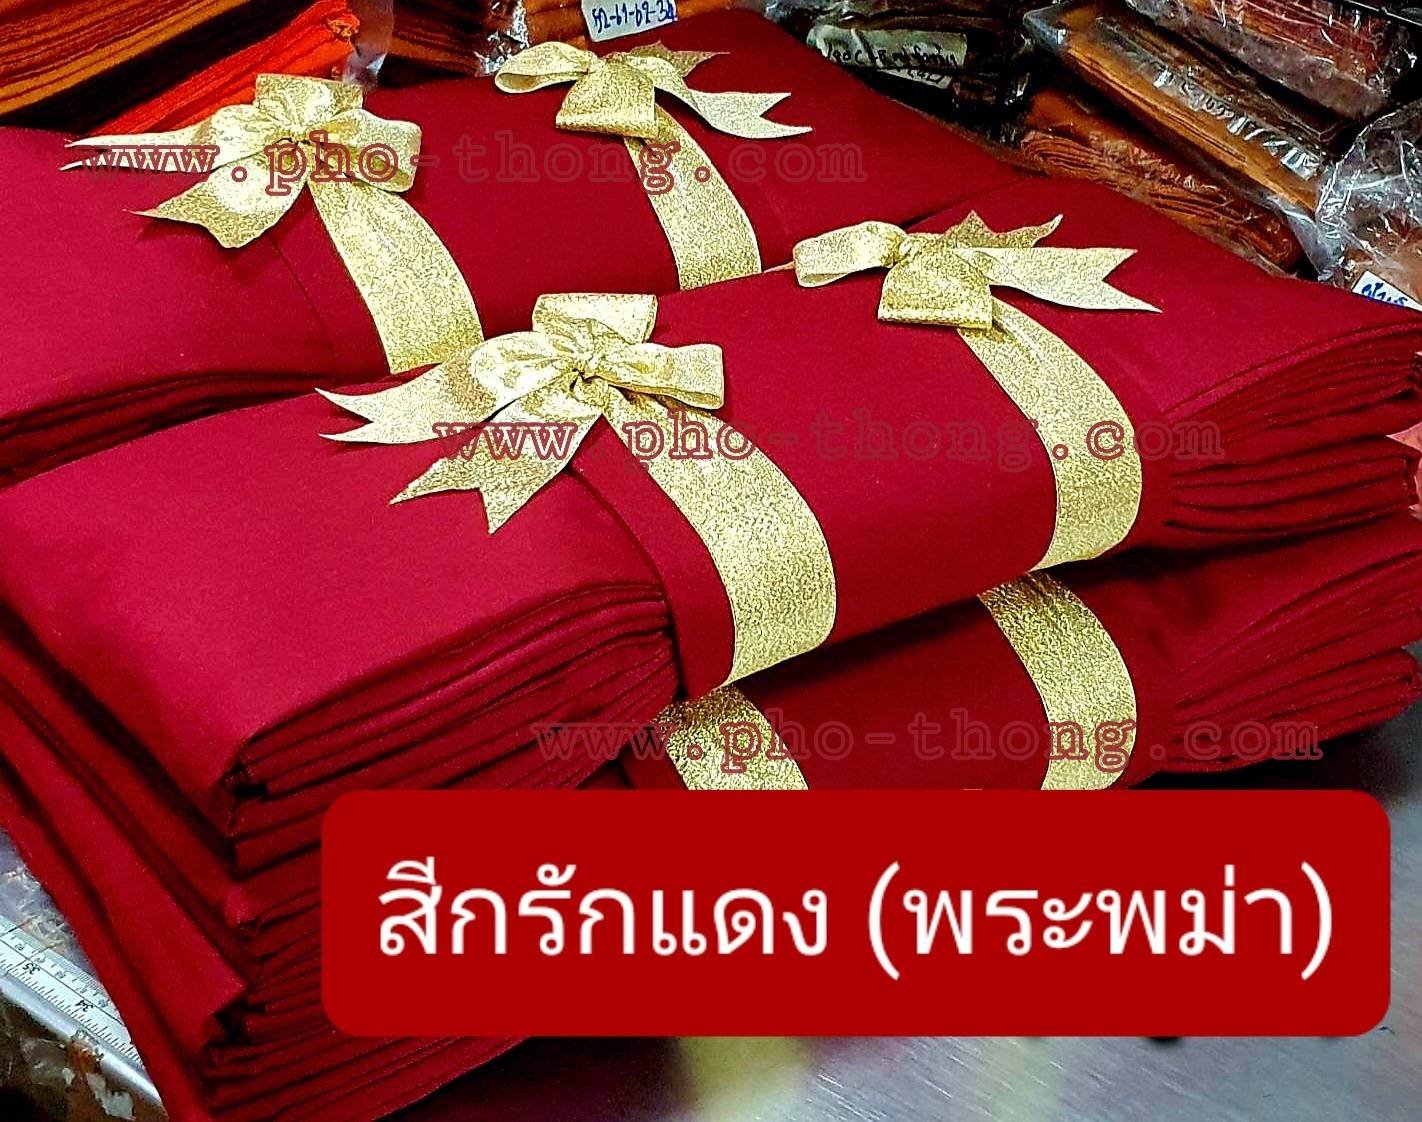 ไตรครอง 9 ขันธ์ (สังฆาฏิ 1 ชั้น - มหานิกาย) ผ้ามัสลิน/ผ้าซันฟอไรส์ Premium Grade สีกรักแดง(พระพม่า) ขนาด 1.90 ม.